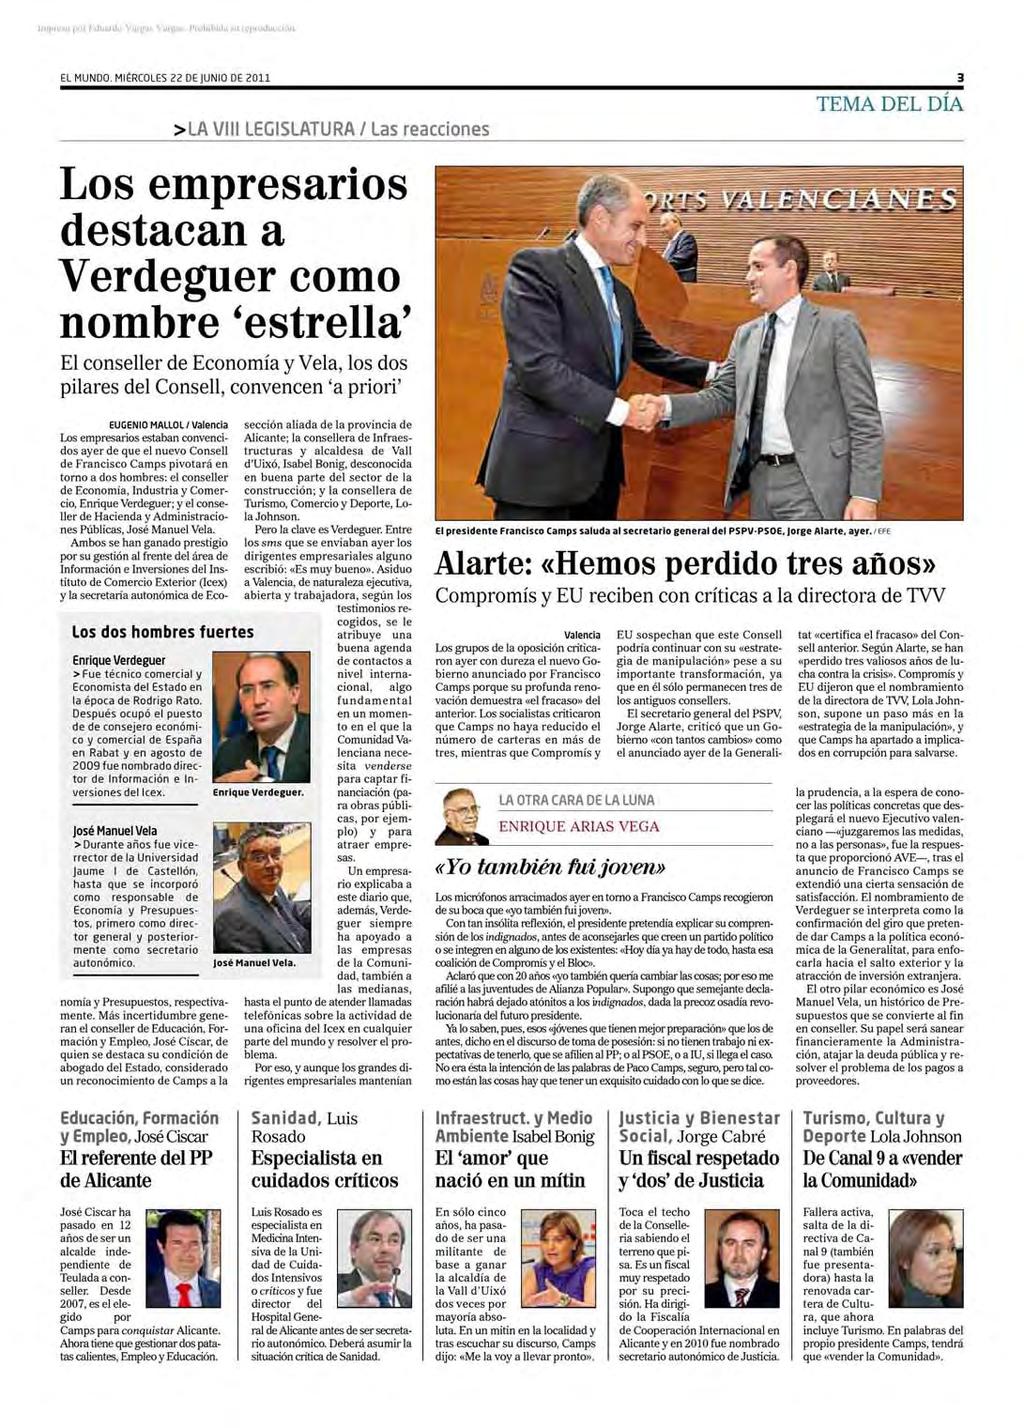 El Mundo Valencia, miércoles,